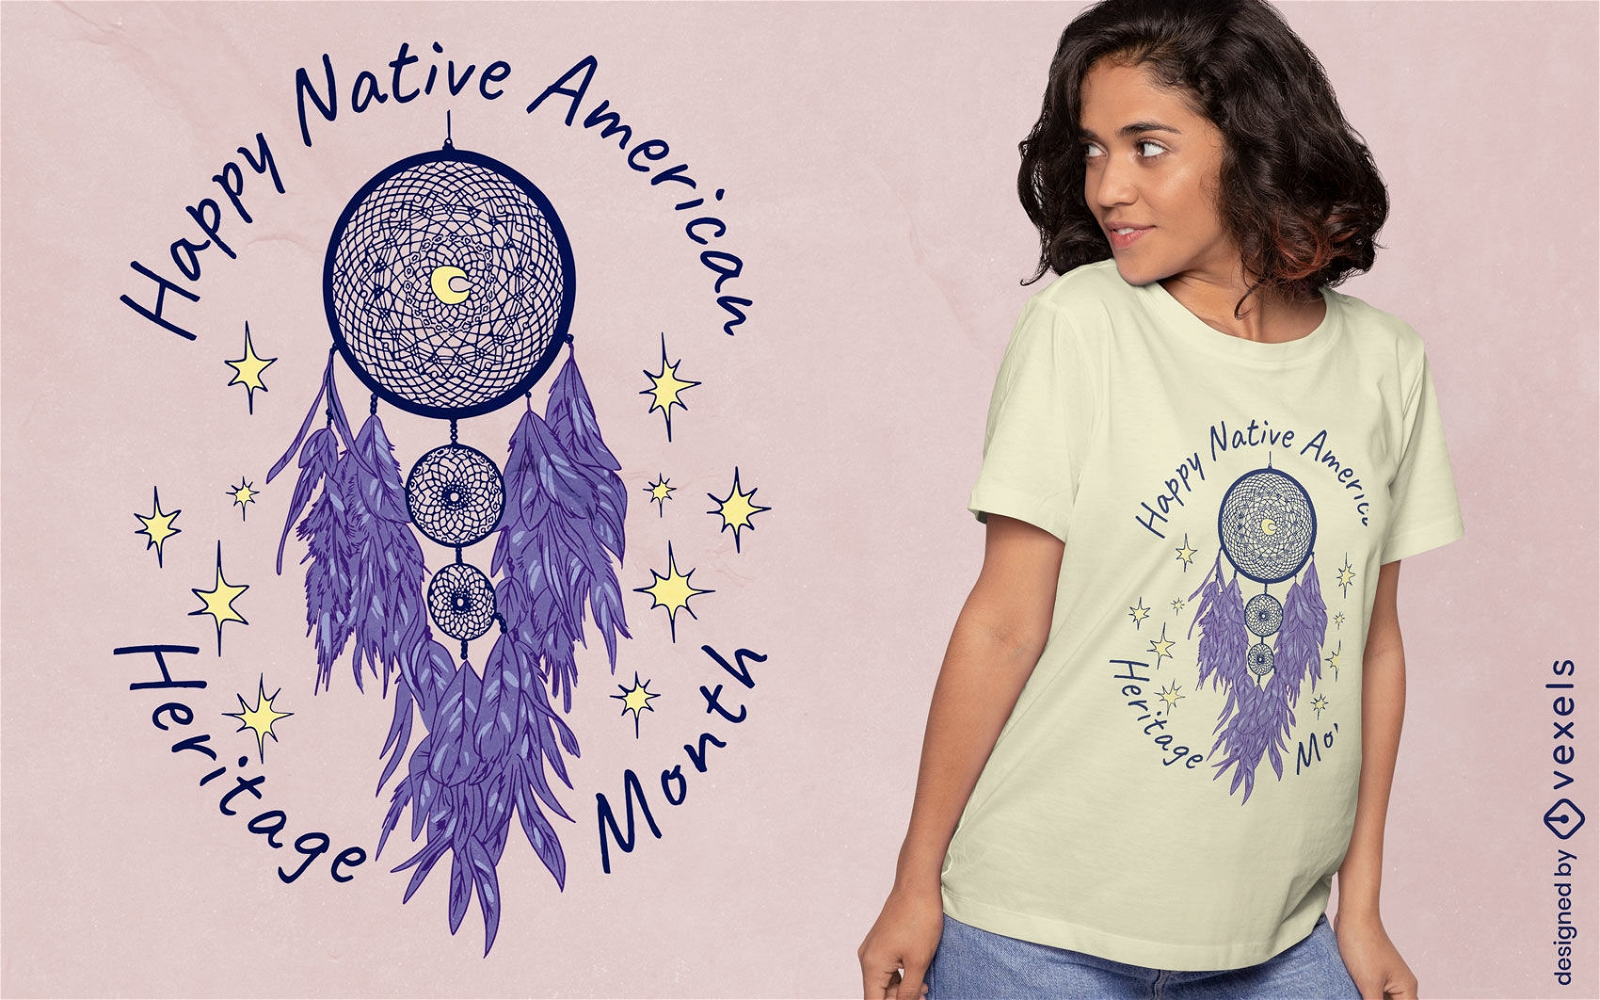 Dise?o de camiseta de atrapasue?os nativo americano.